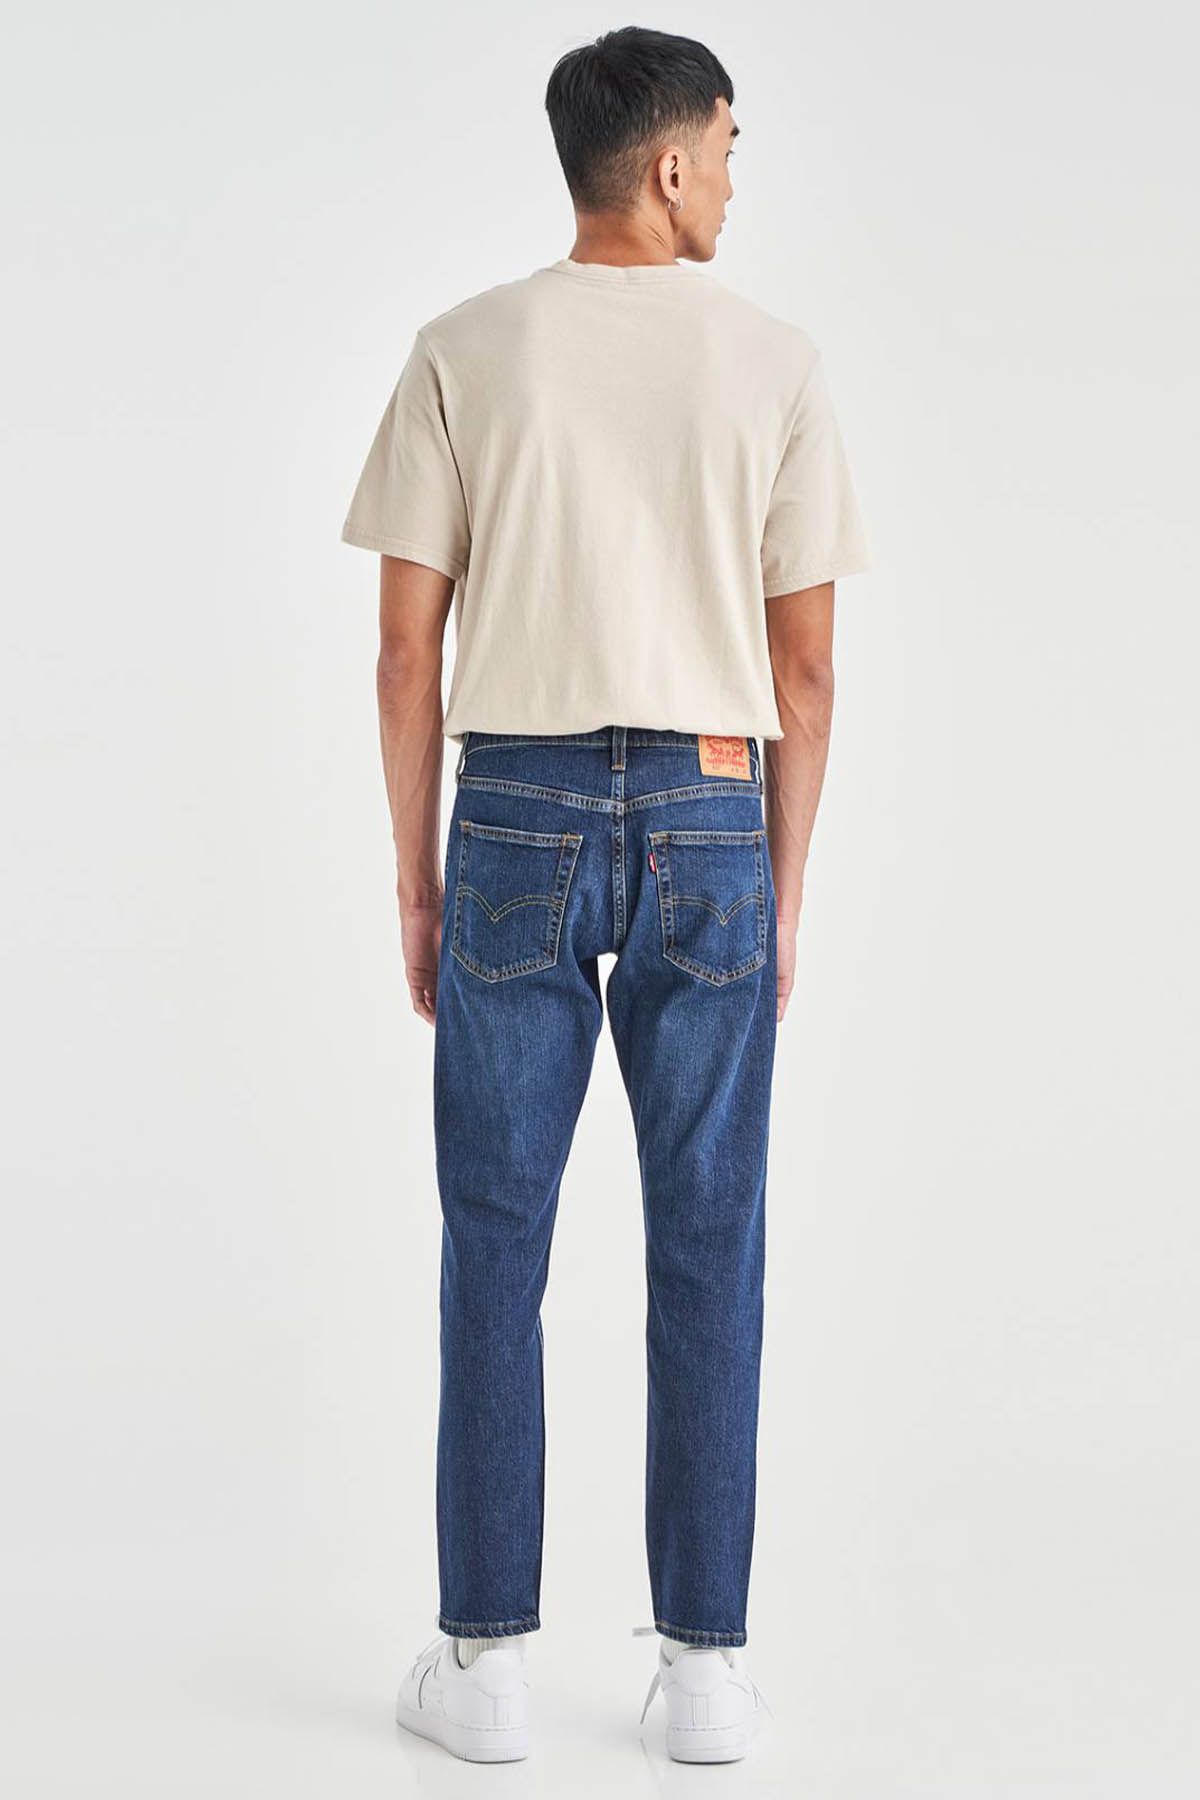 Levi's ® Levi's Men's 512 Slim Taper Jeans Dark Indigo Men Jeans